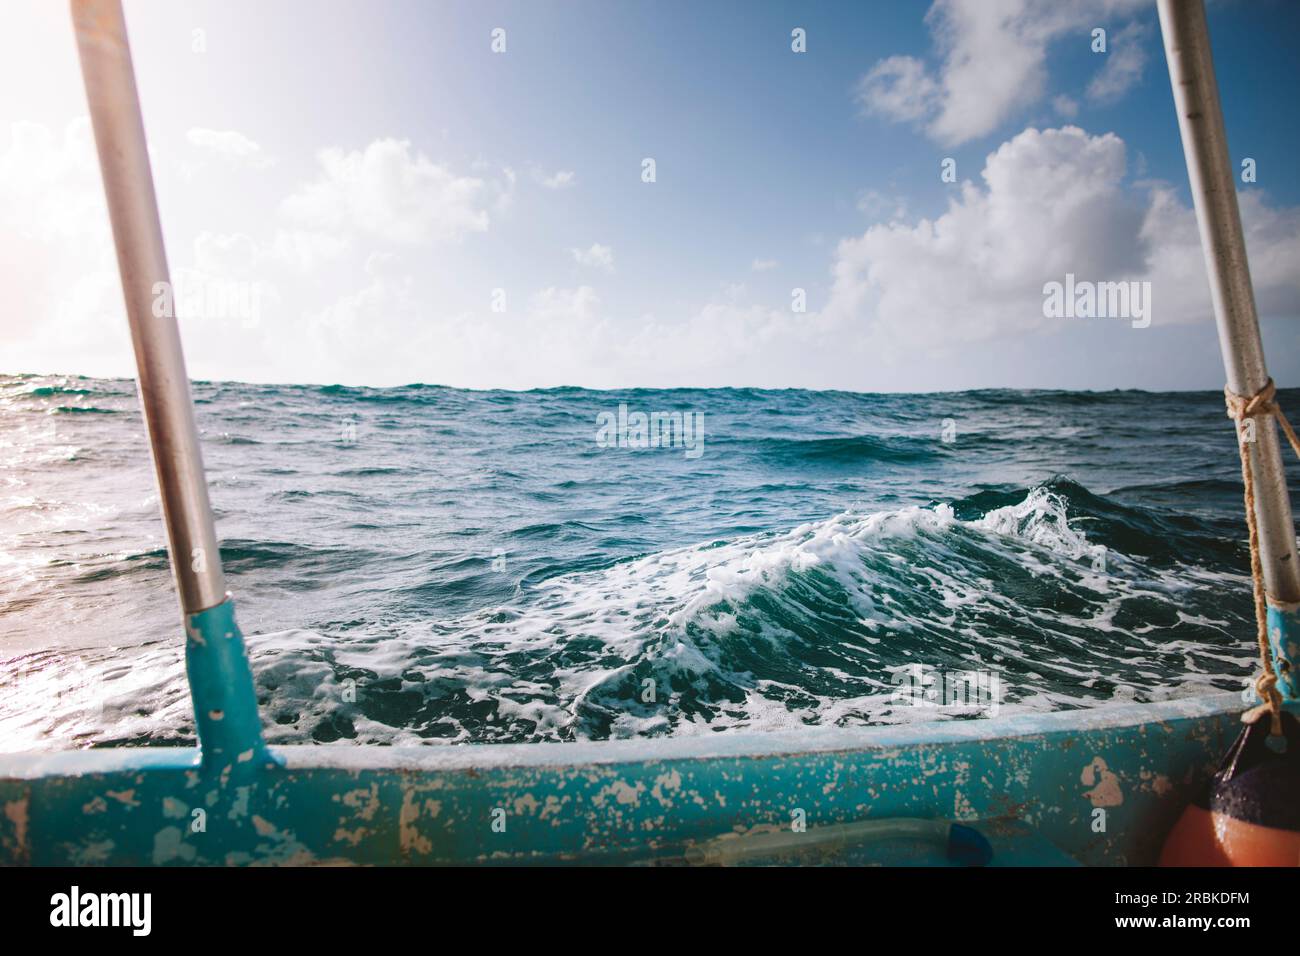 Eine kleine Welle auf dem Meer wird von einem Hochseefischerboot umrahmt Stockfoto